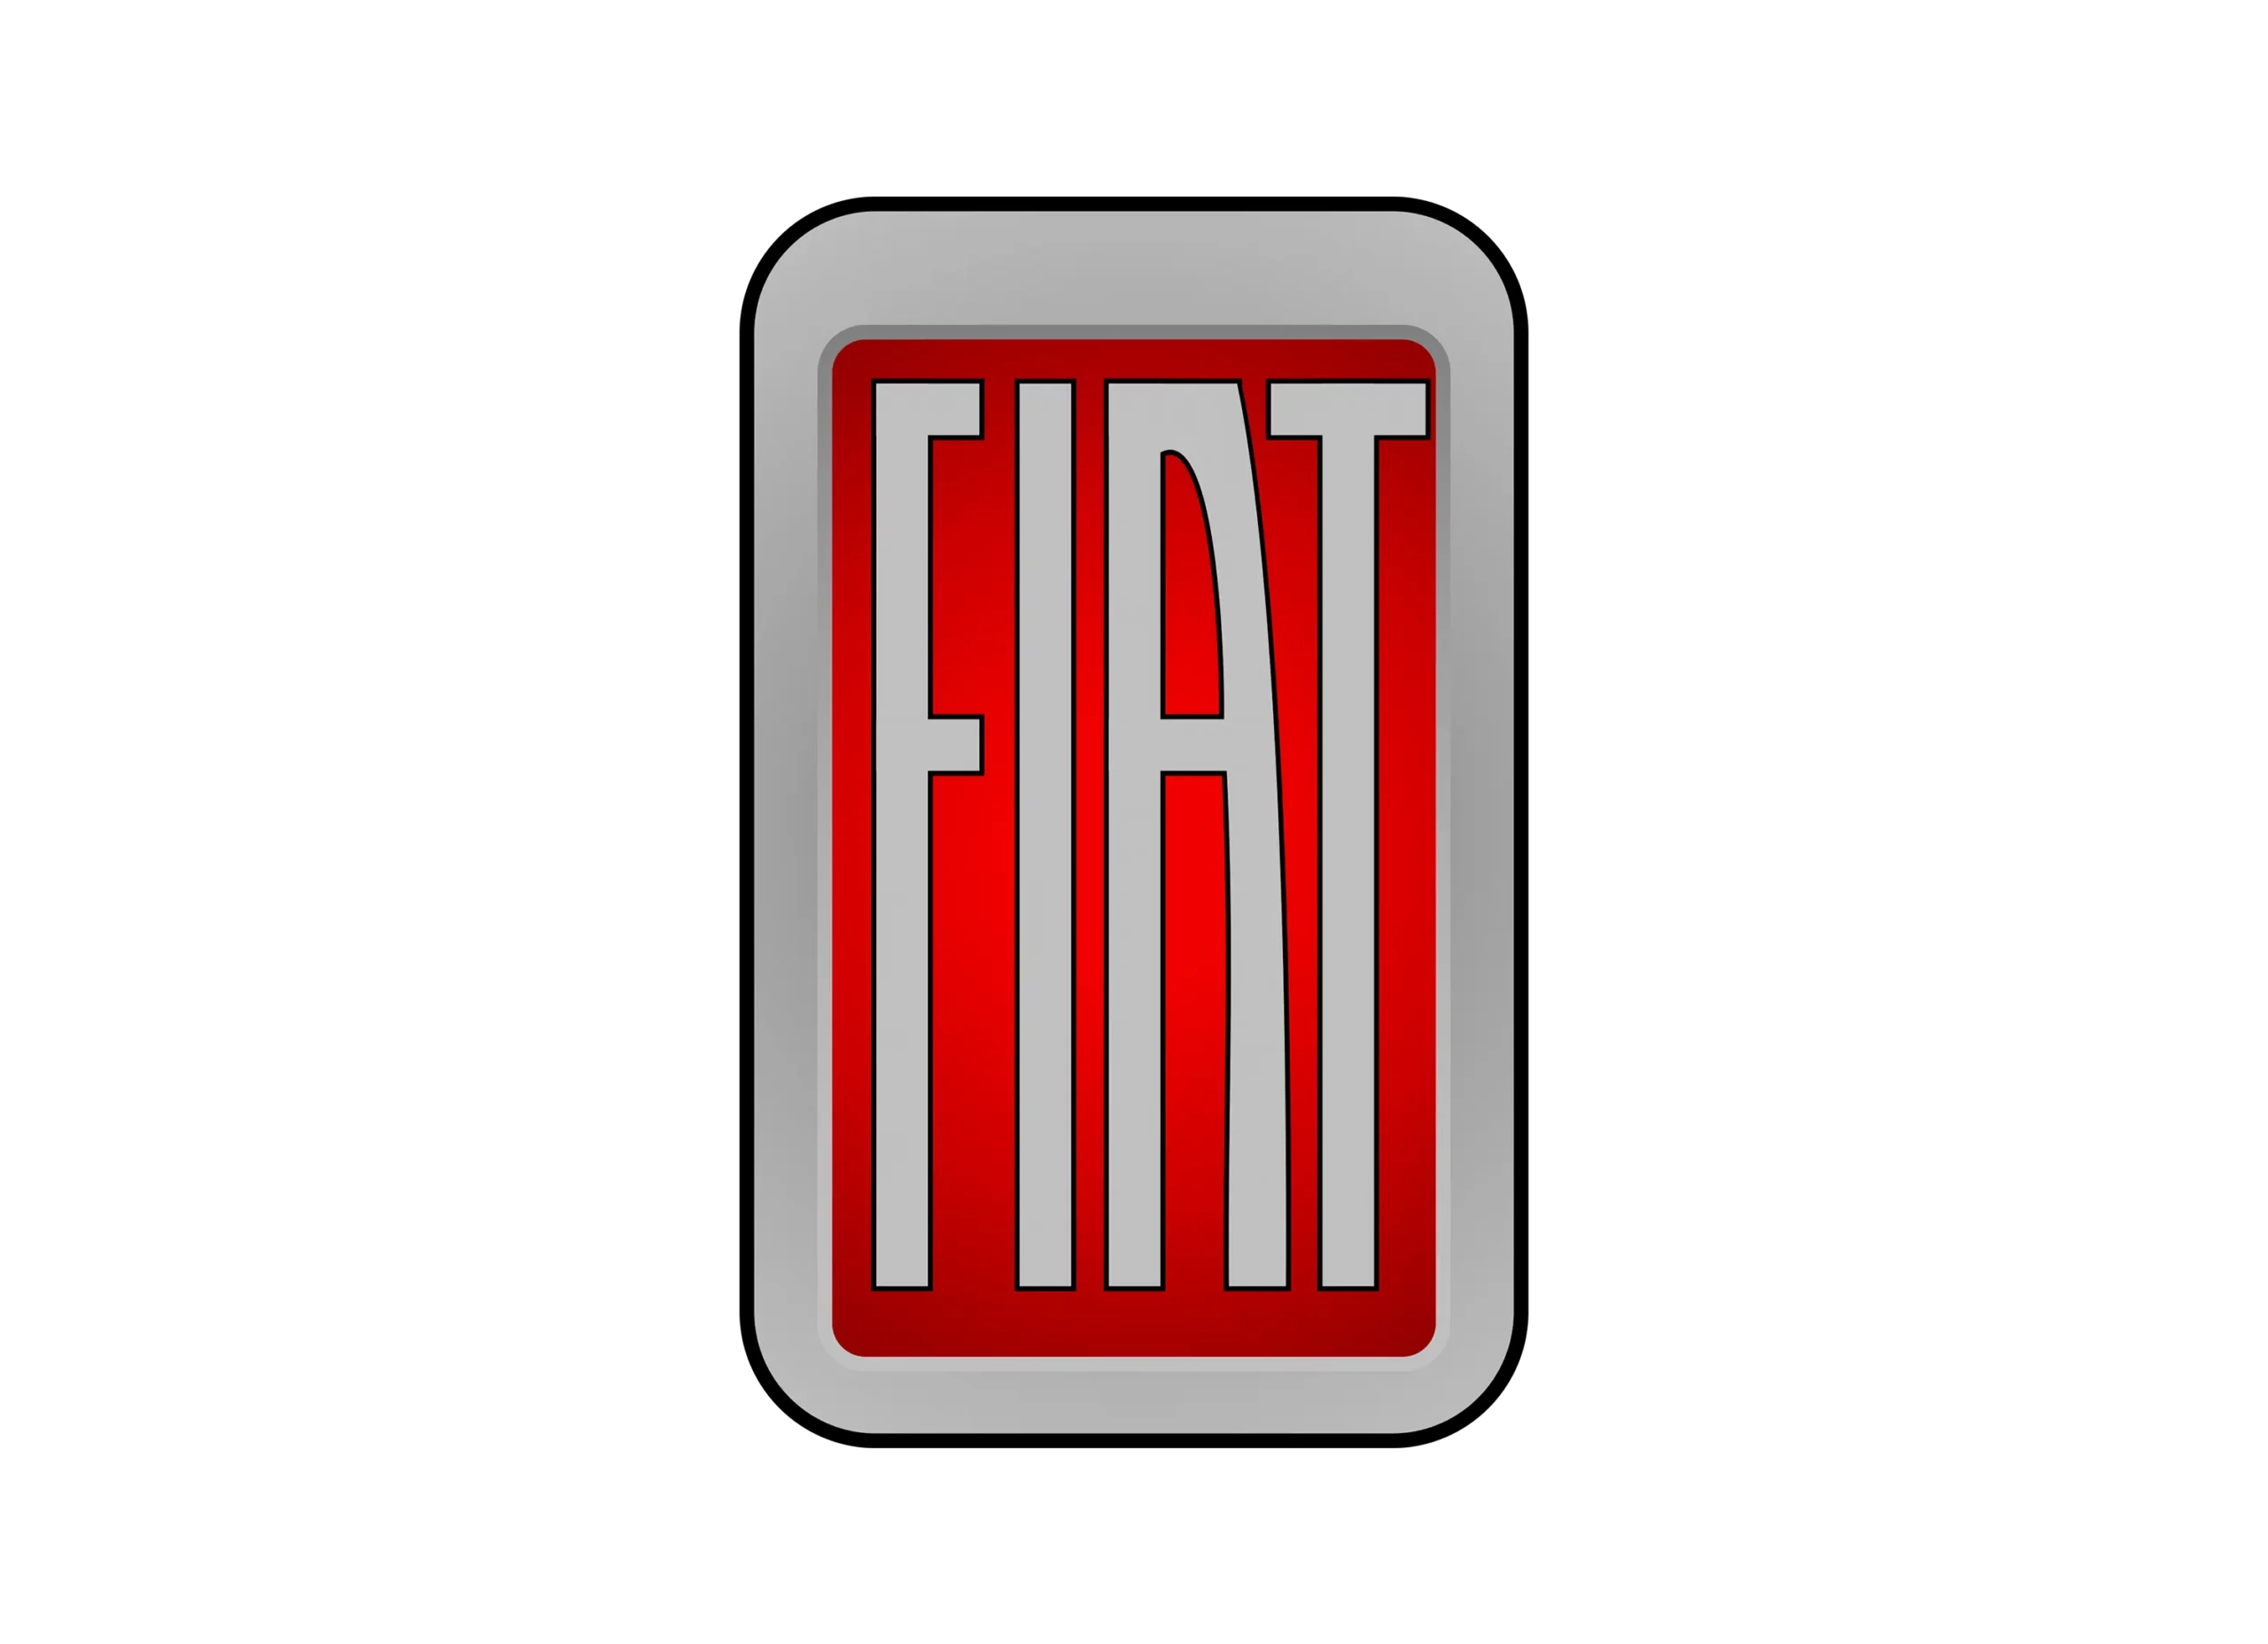 Fiat logo 1931-1932